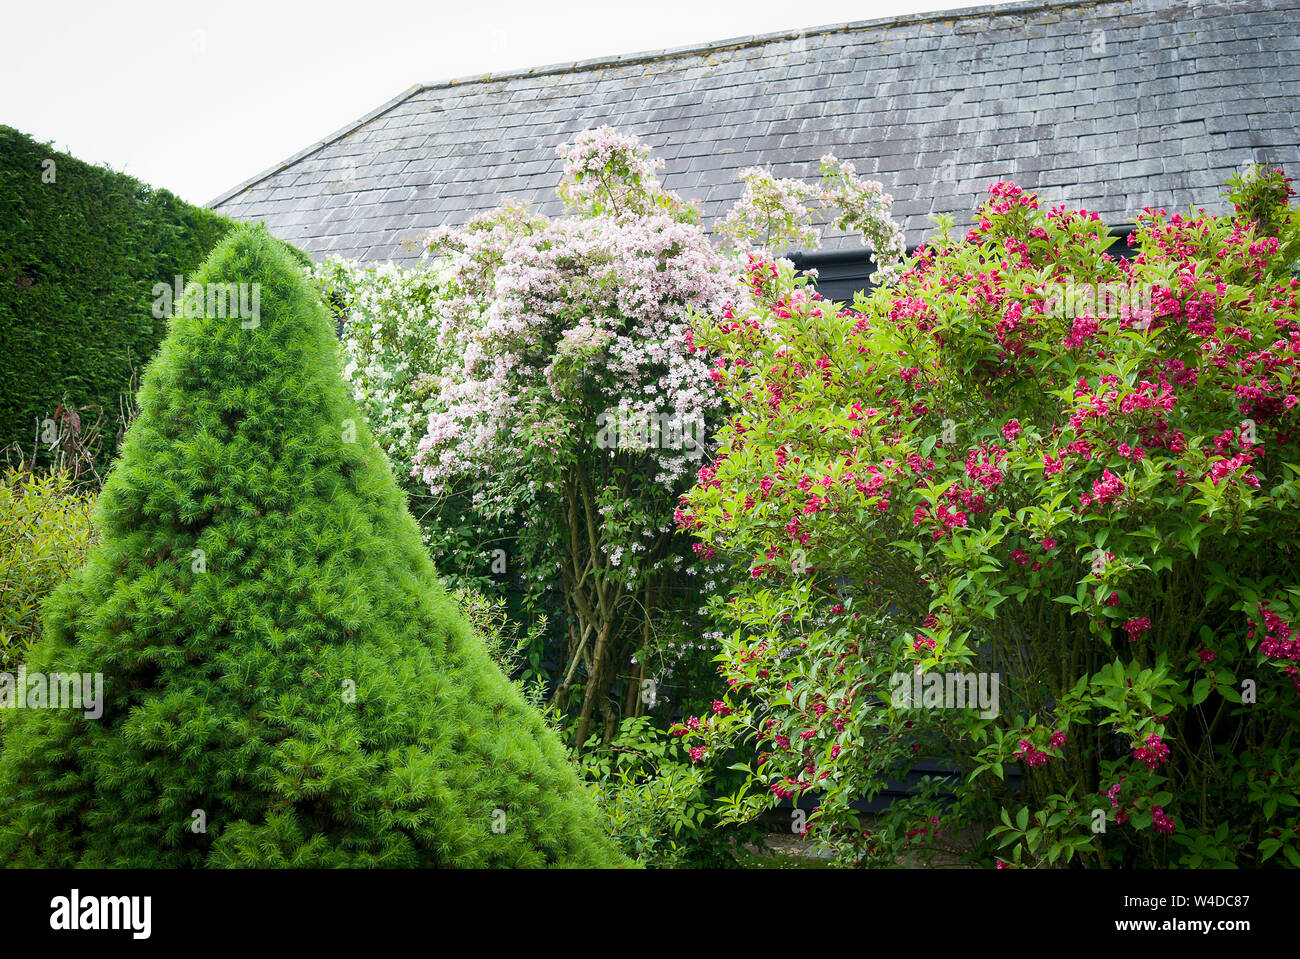 Un pequeño jardín con setos coníferas perennes y caducifolios flores ornamentales y weigela kolkwitzia en un jardín inglés Foto de stock